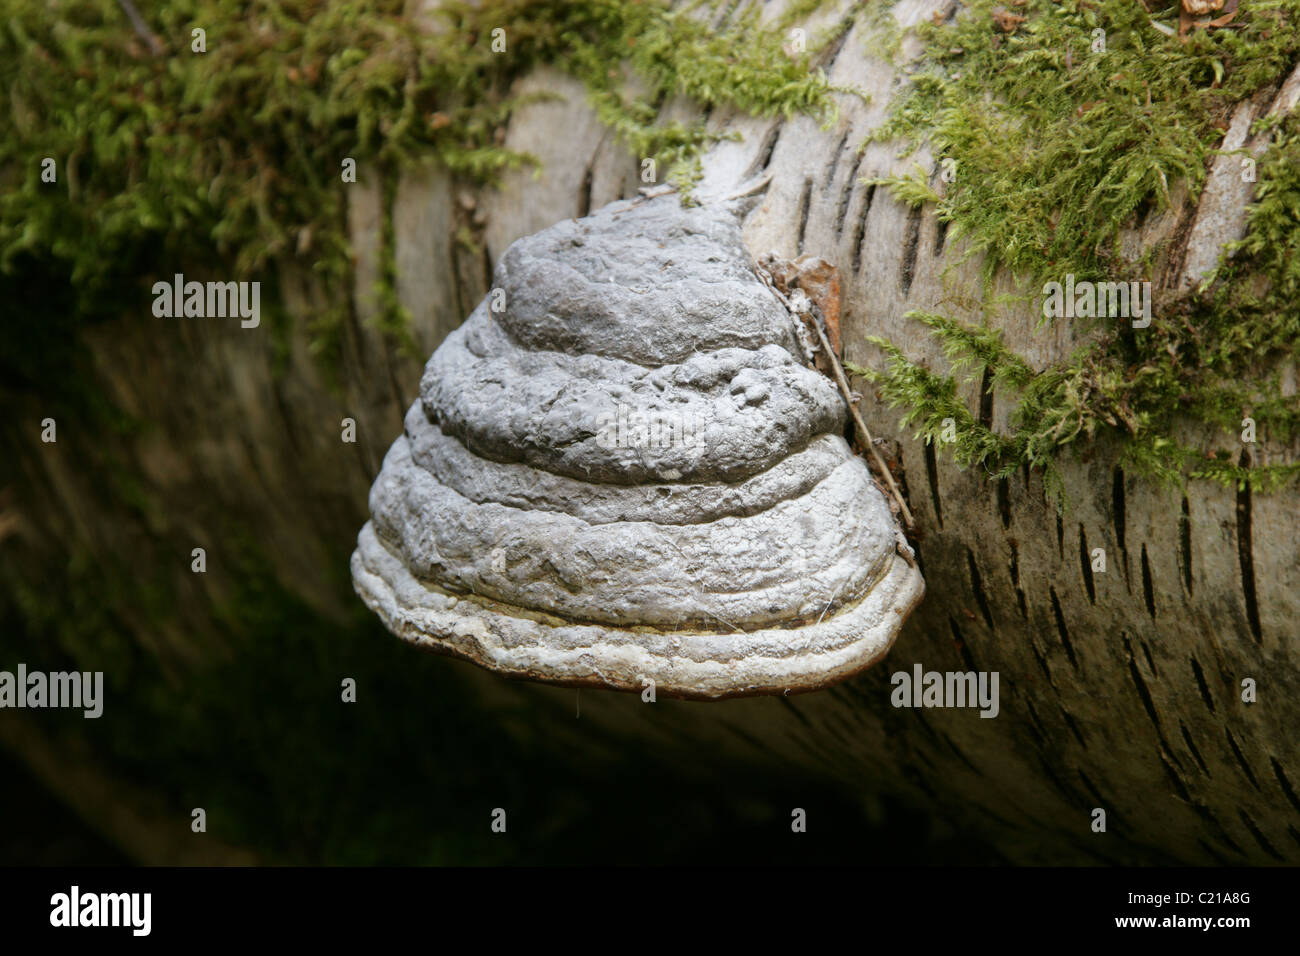 Tinder fungo, zoccolo di cavallo fungo, Tinder Polypore o uomo di ghiaccio fungo, Fomes fomentarius, Polyporaceae. Foto Stock